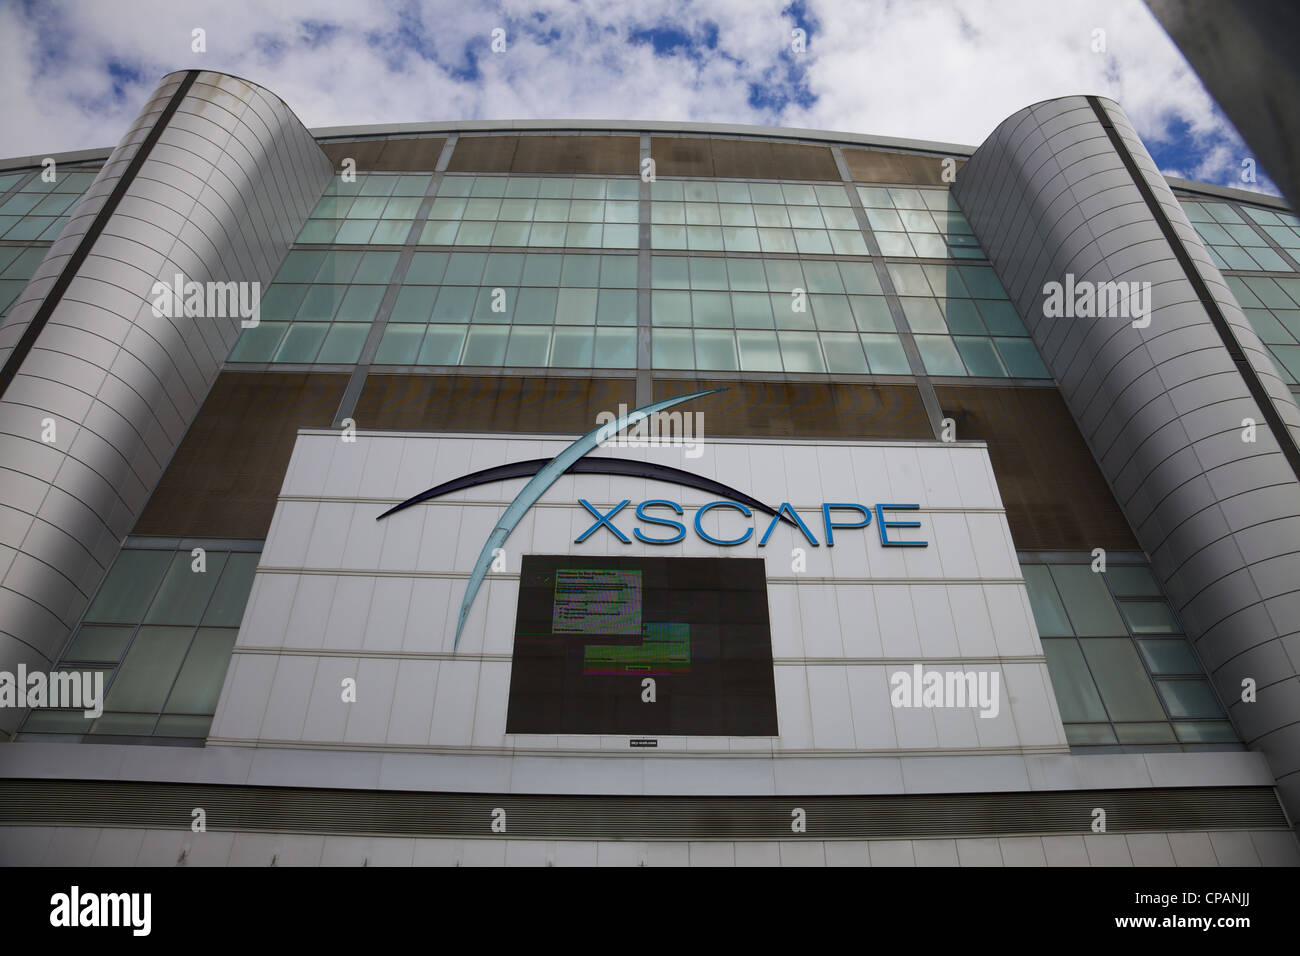 Xspace leisure centre, Milton Keynes, England Stock Photo